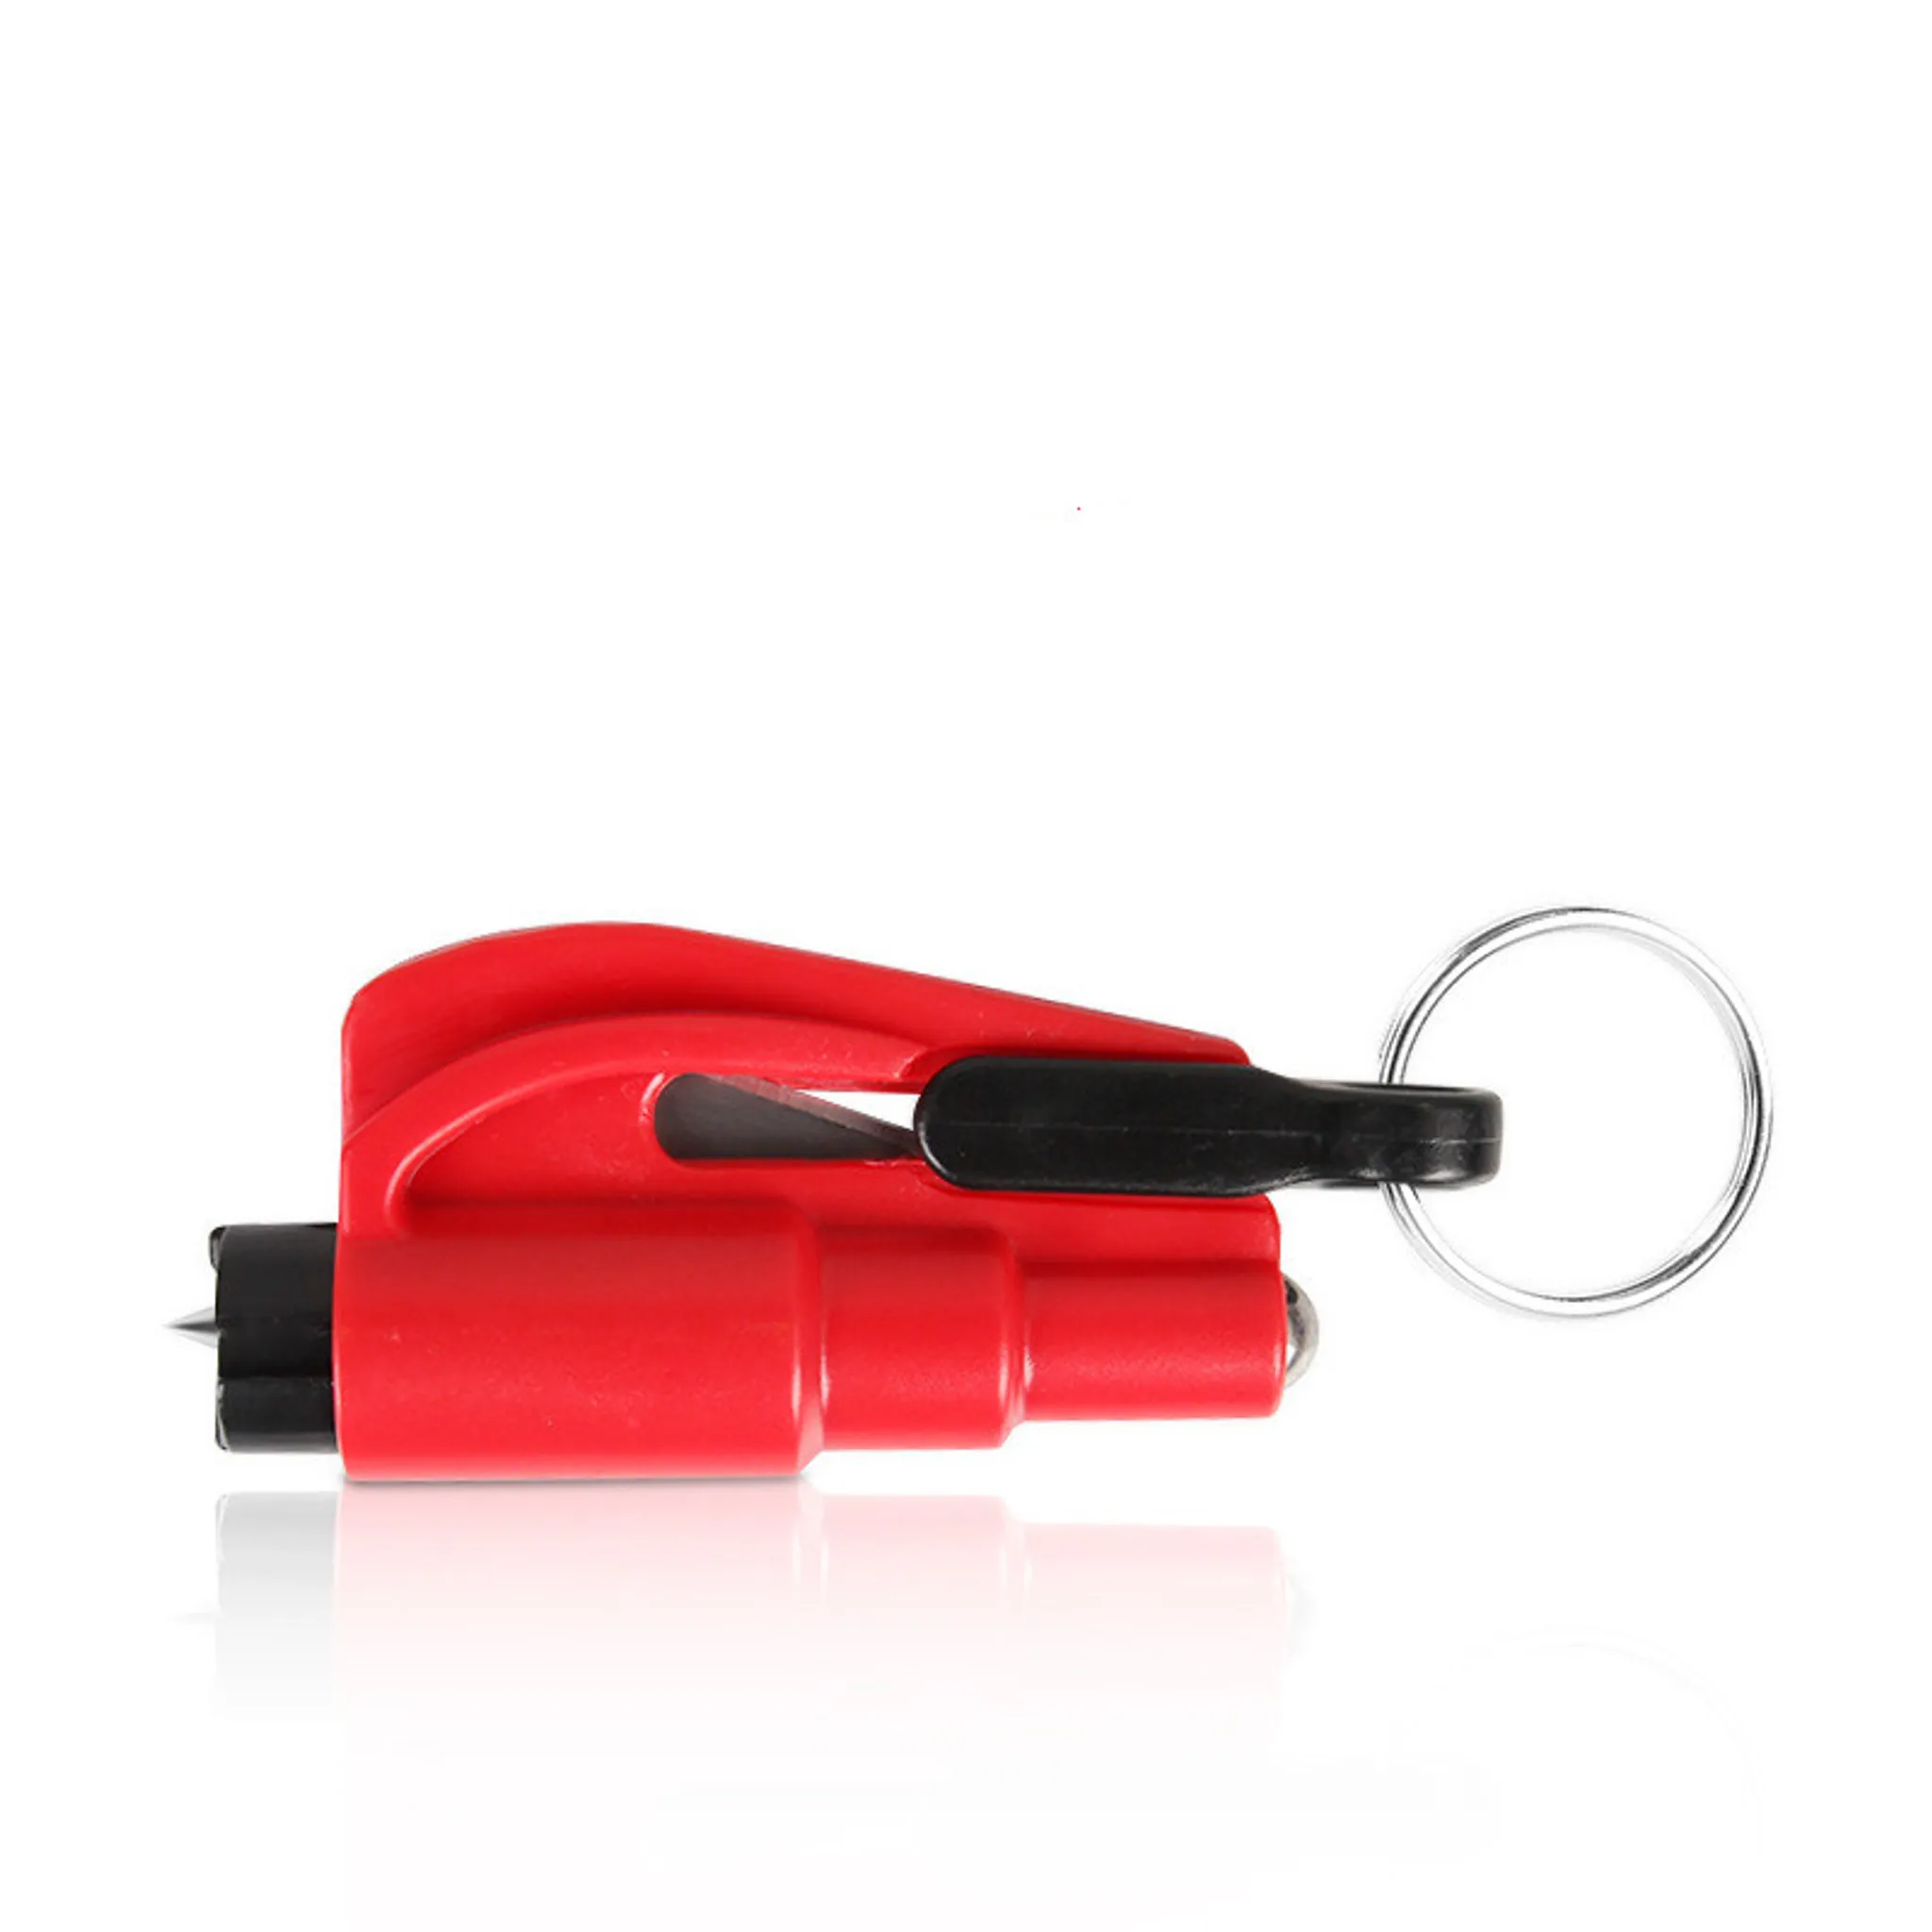 INF Schlüsselanhänger mit Scheibenbrecher und Gurtschneider Rot Type B